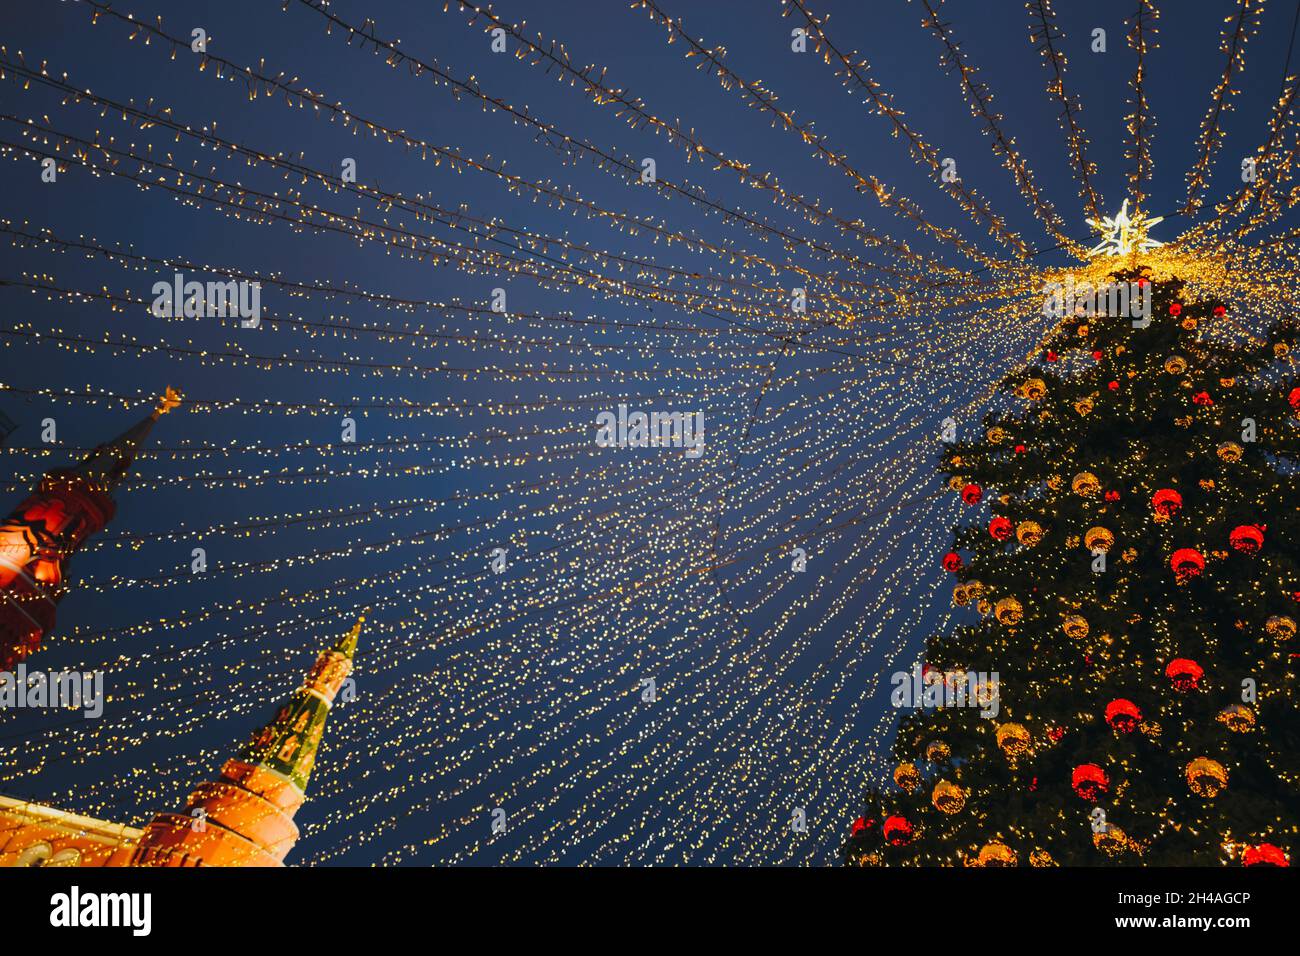 Weihnachtsbaum auf dem Roten Platz in Moskau mit goldenen Kugeln, Stern, Girlanden, funkelnden Lichtern geschmückt. Girlanden von goldenen Lichtern breiten sich von oben aus Stockfoto